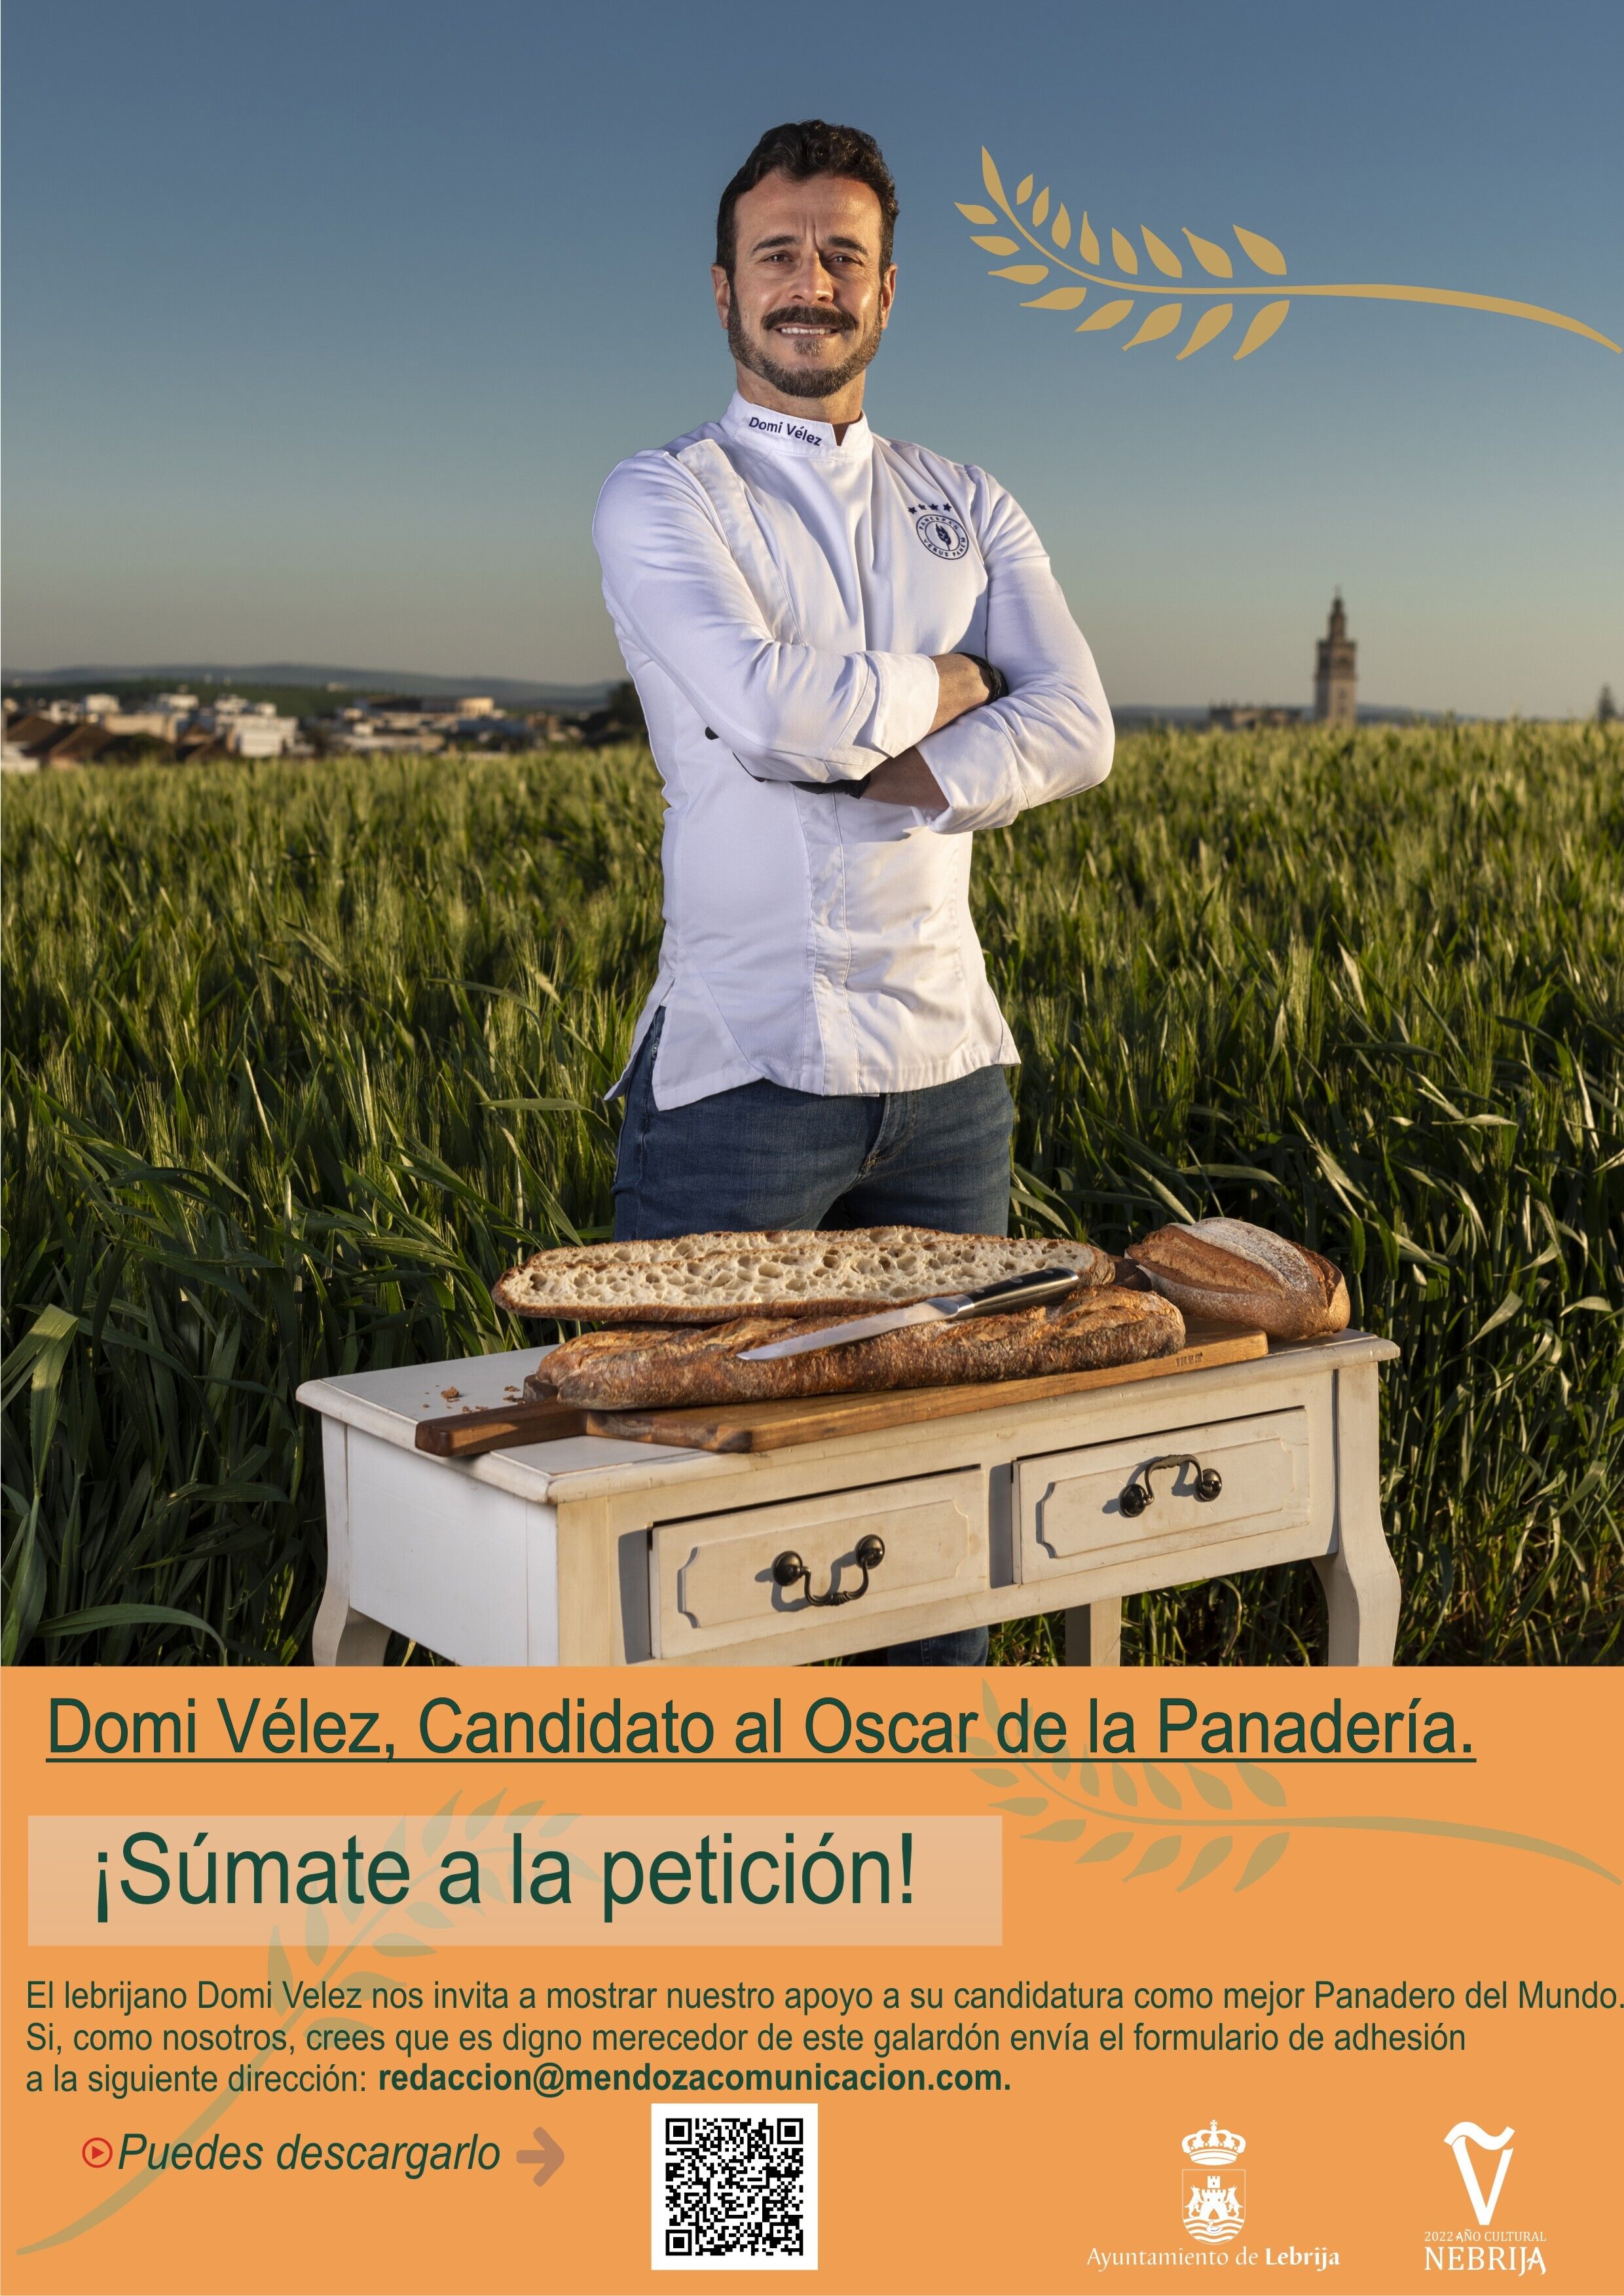 Domi Vélez, Candidato al Mejor Panadero del Mundo